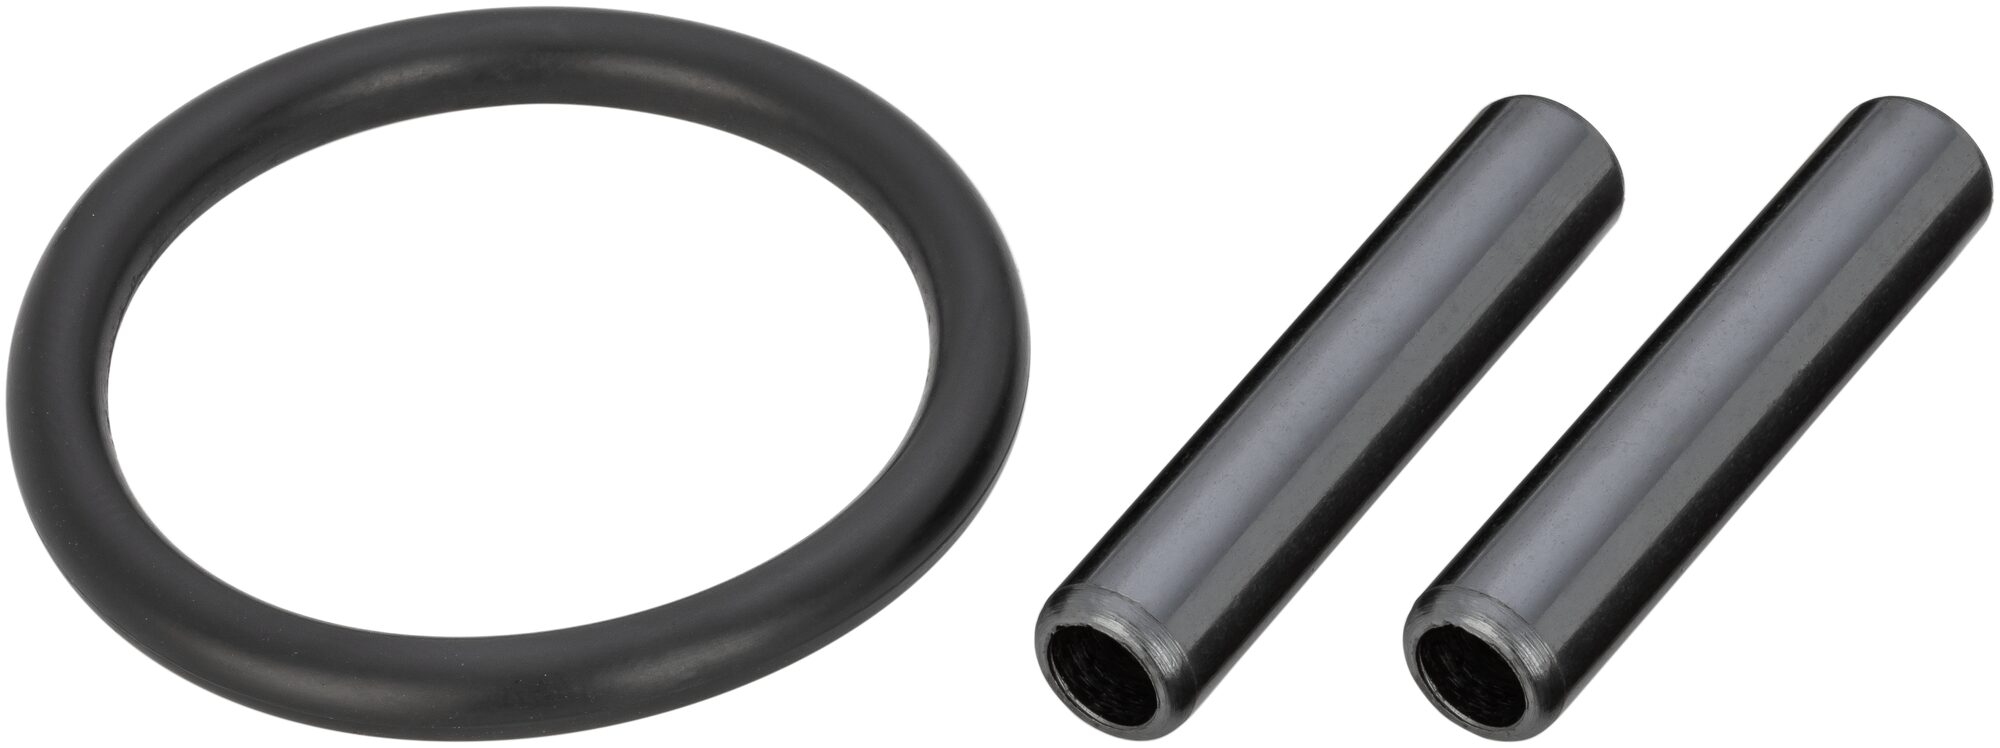 HAZET Ersatzteil Satz für Federspanner: 2 Zylinderstifte und 1 O-Ring 4900-02A/3 · 7 mm